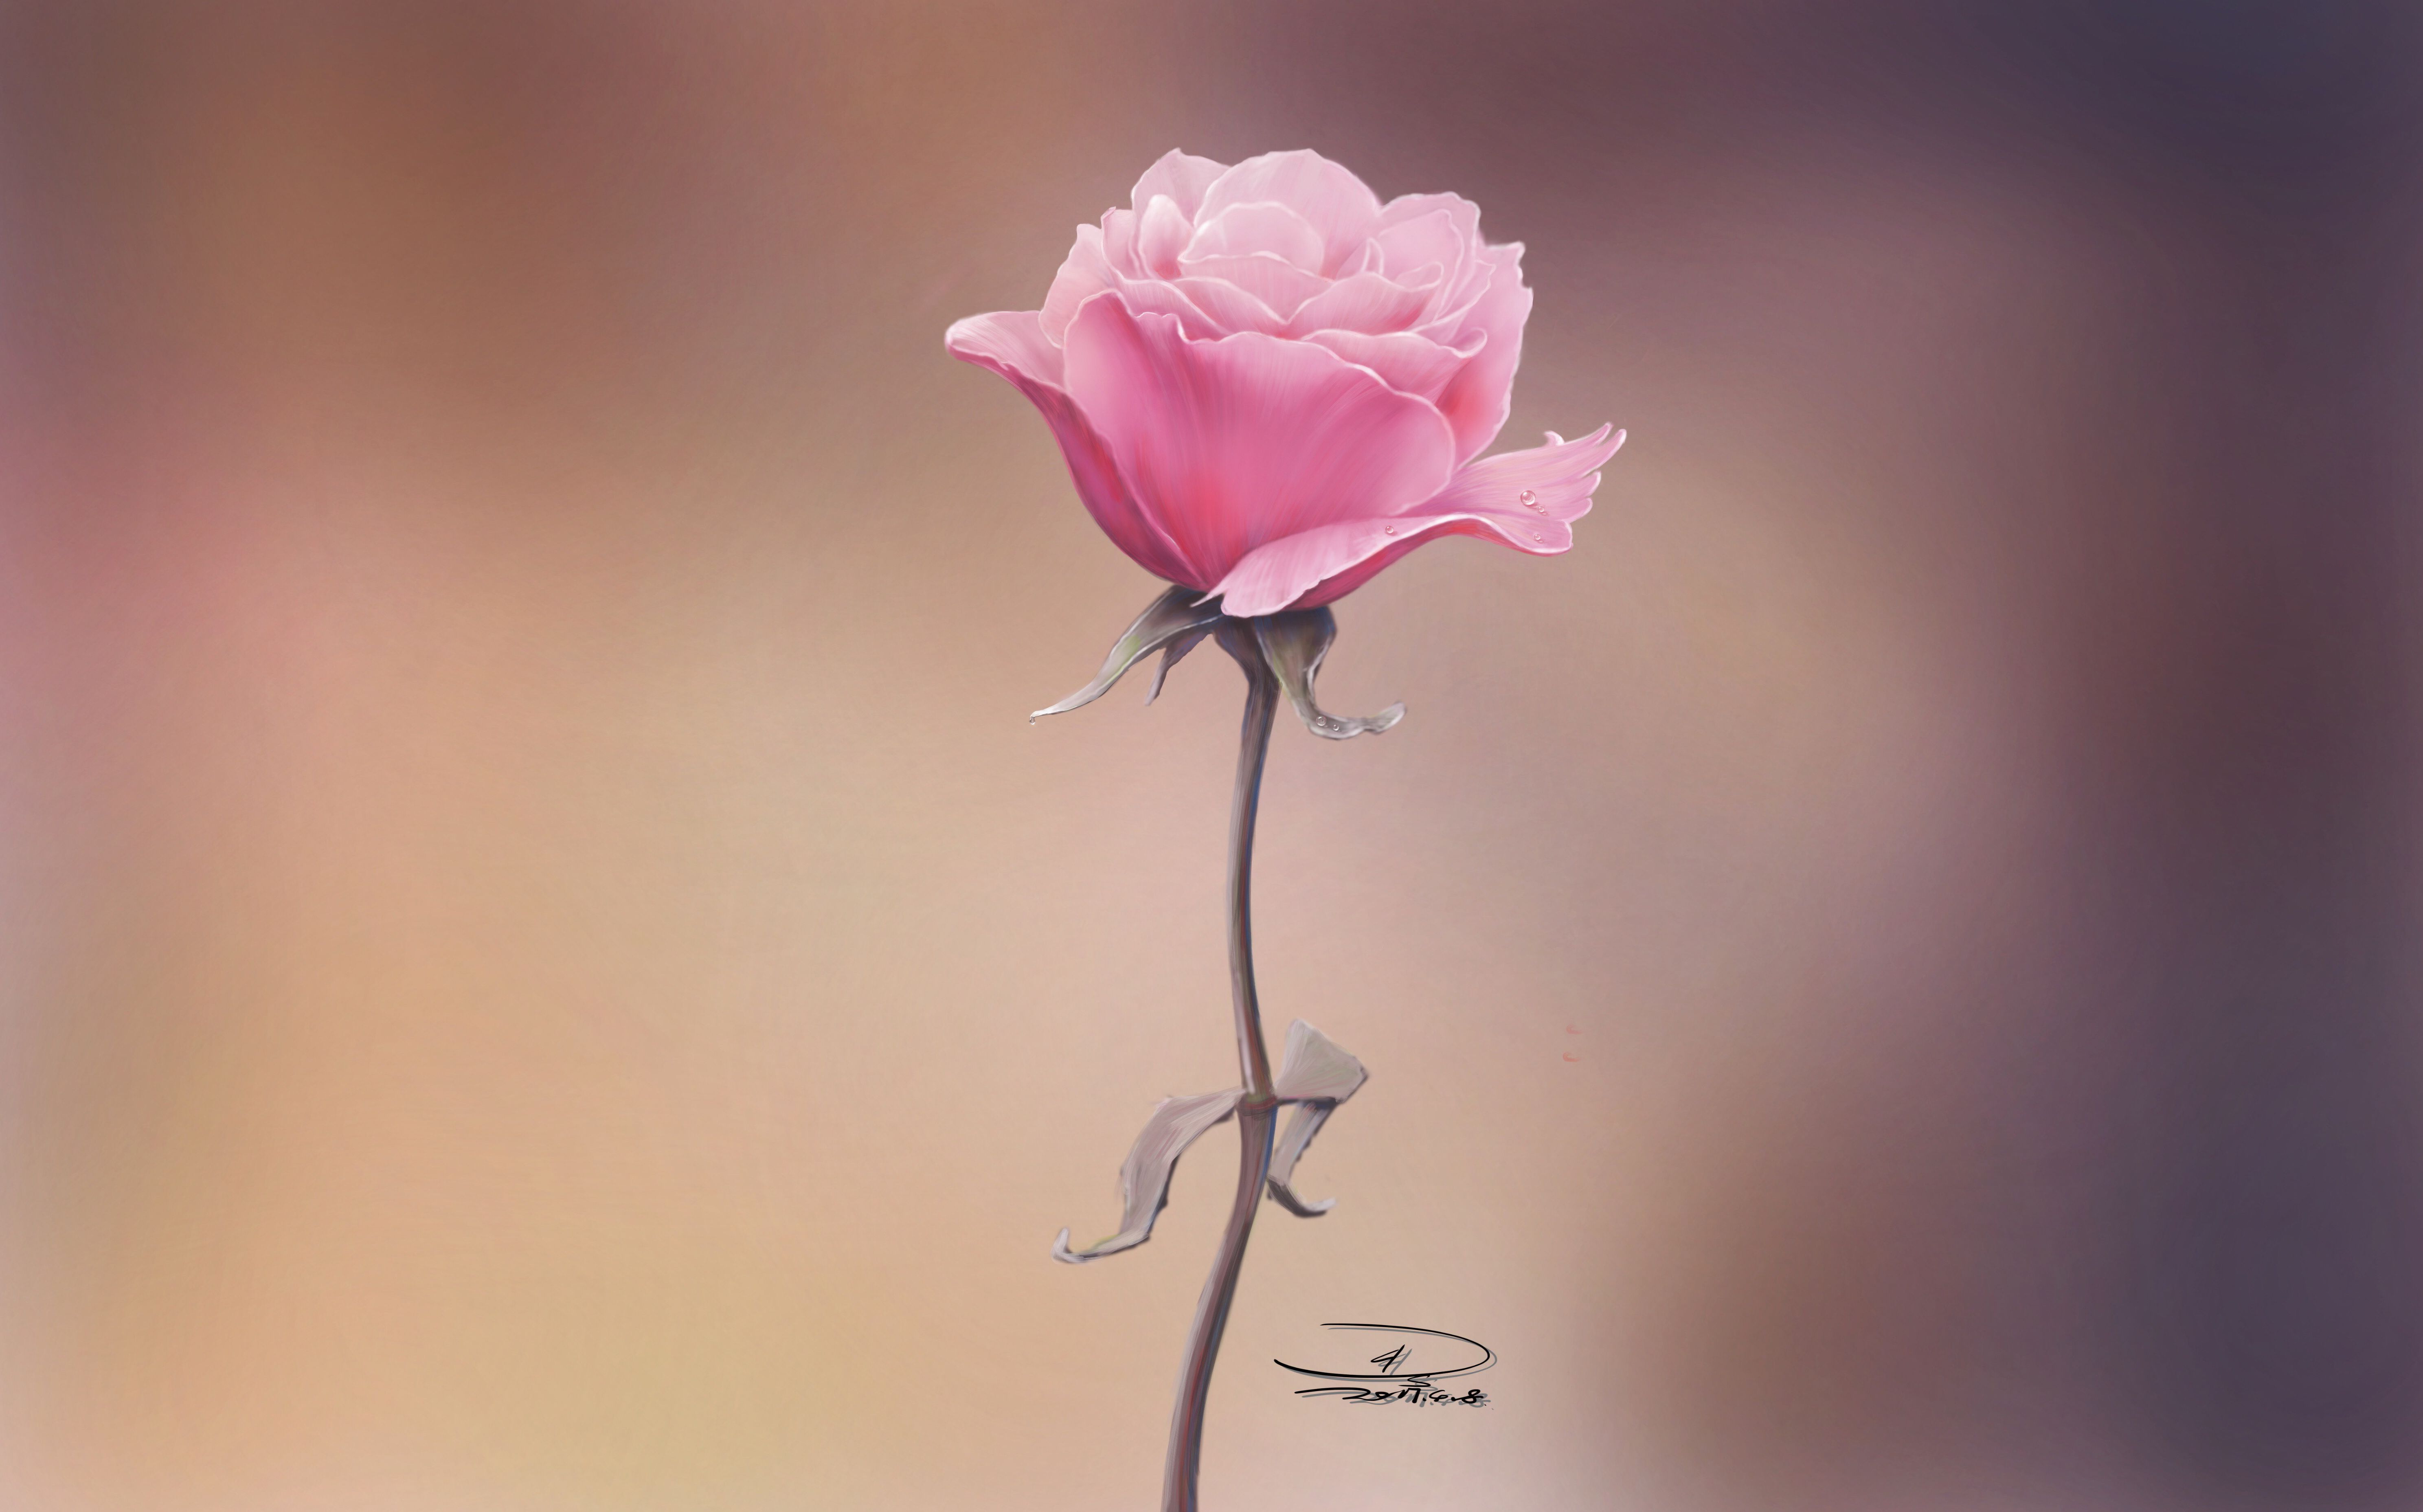 玫瑰 粉色 粉红玫瑰 - Pixabay上的免费照片 - Pixabay